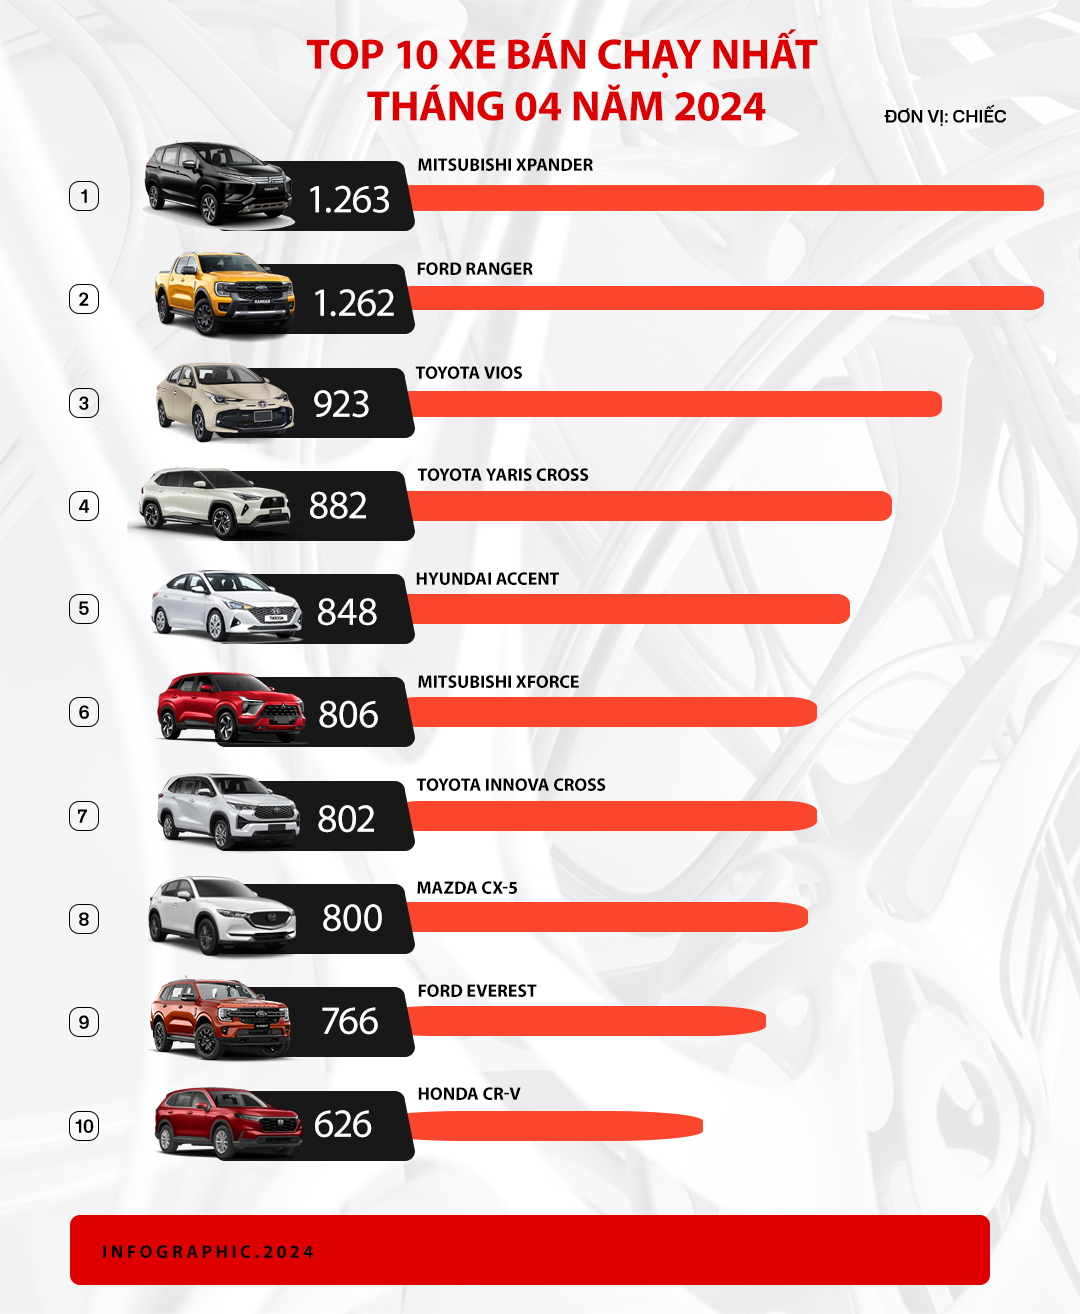 Toyota Yaris Cross bán chạy nhất, vượt Xforce, Innova Cross lần đầu lọt top 10, gấp 4 lần Custin và những điều đáng chú ý của top 10 xe bán chạy tháng 4/2024